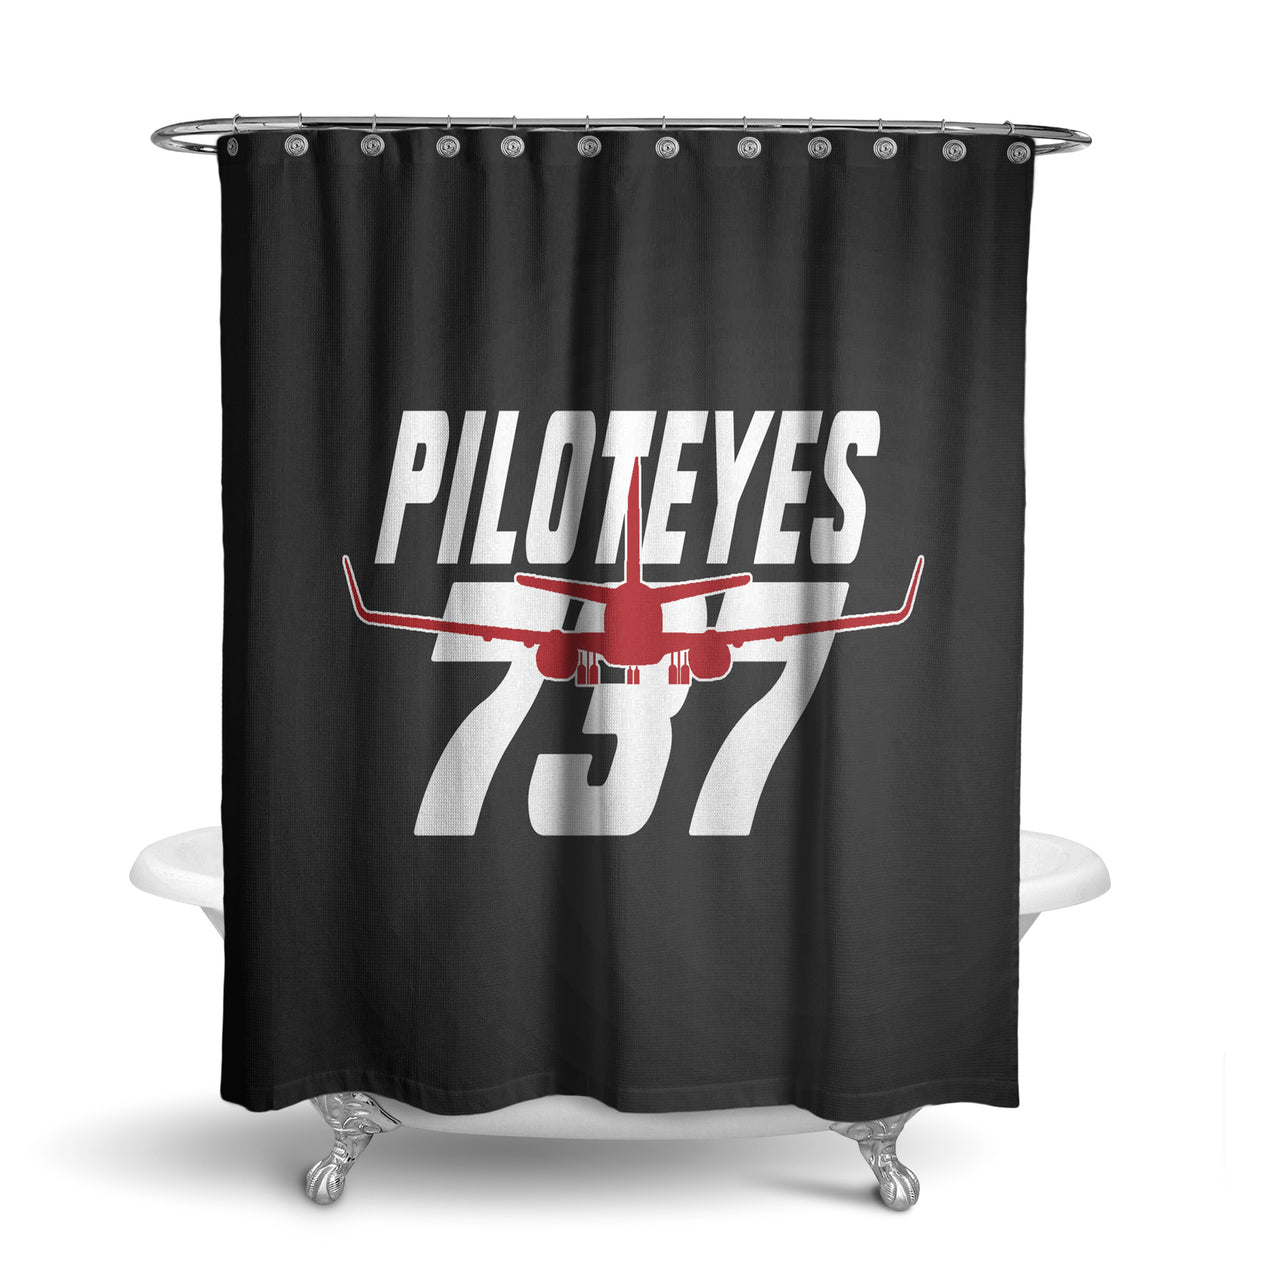 Amazing Piloteyes737 Designed Shower Curtains